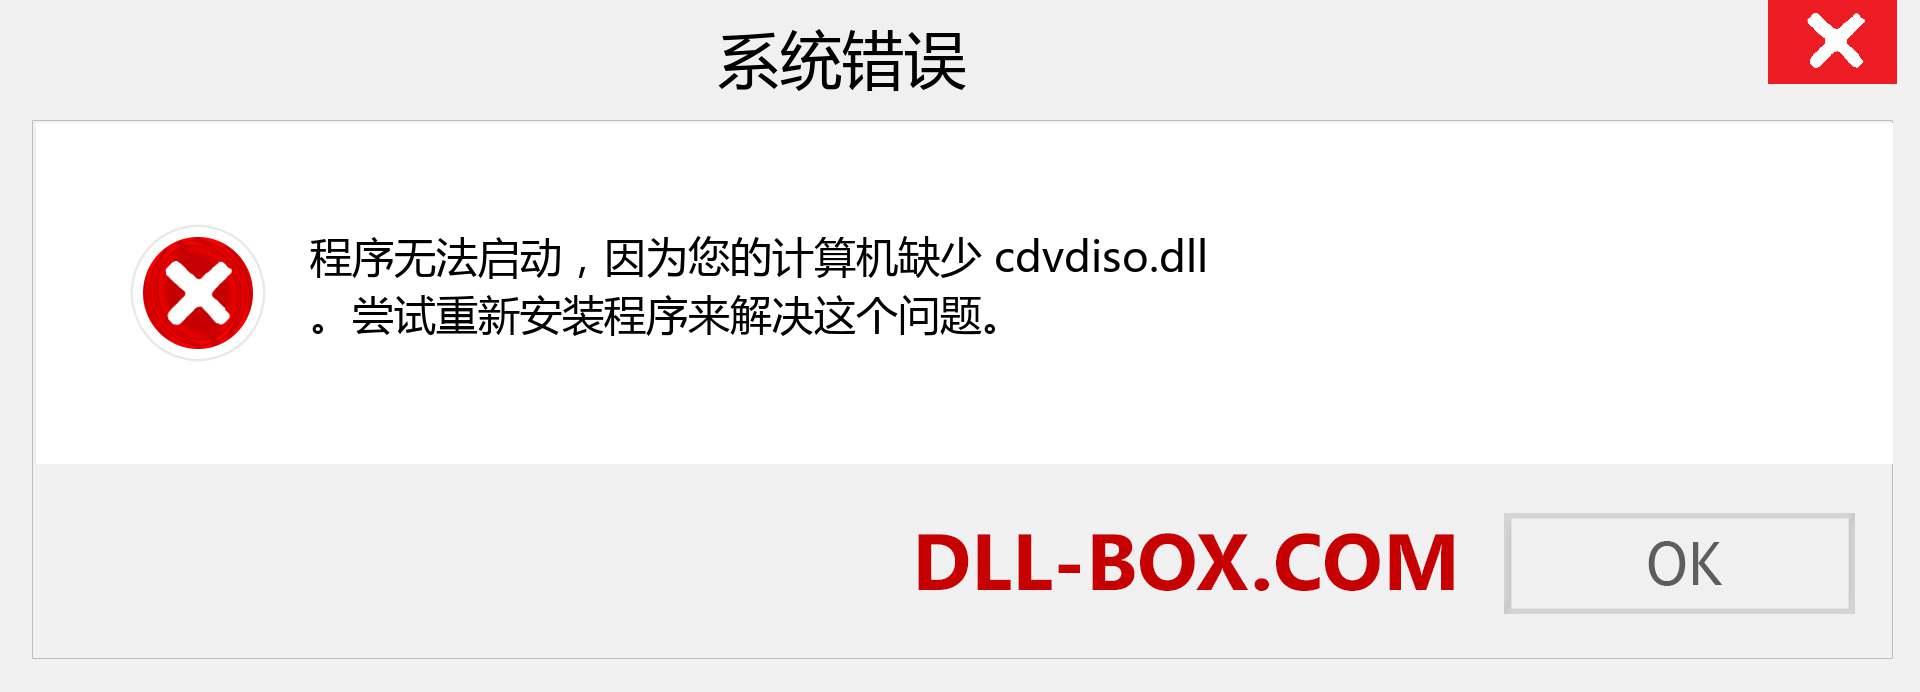 cdvdiso.dll 文件丢失？。 适用于 Windows 7、8、10 的下载 - 修复 Windows、照片、图像上的 cdvdiso dll 丢失错误